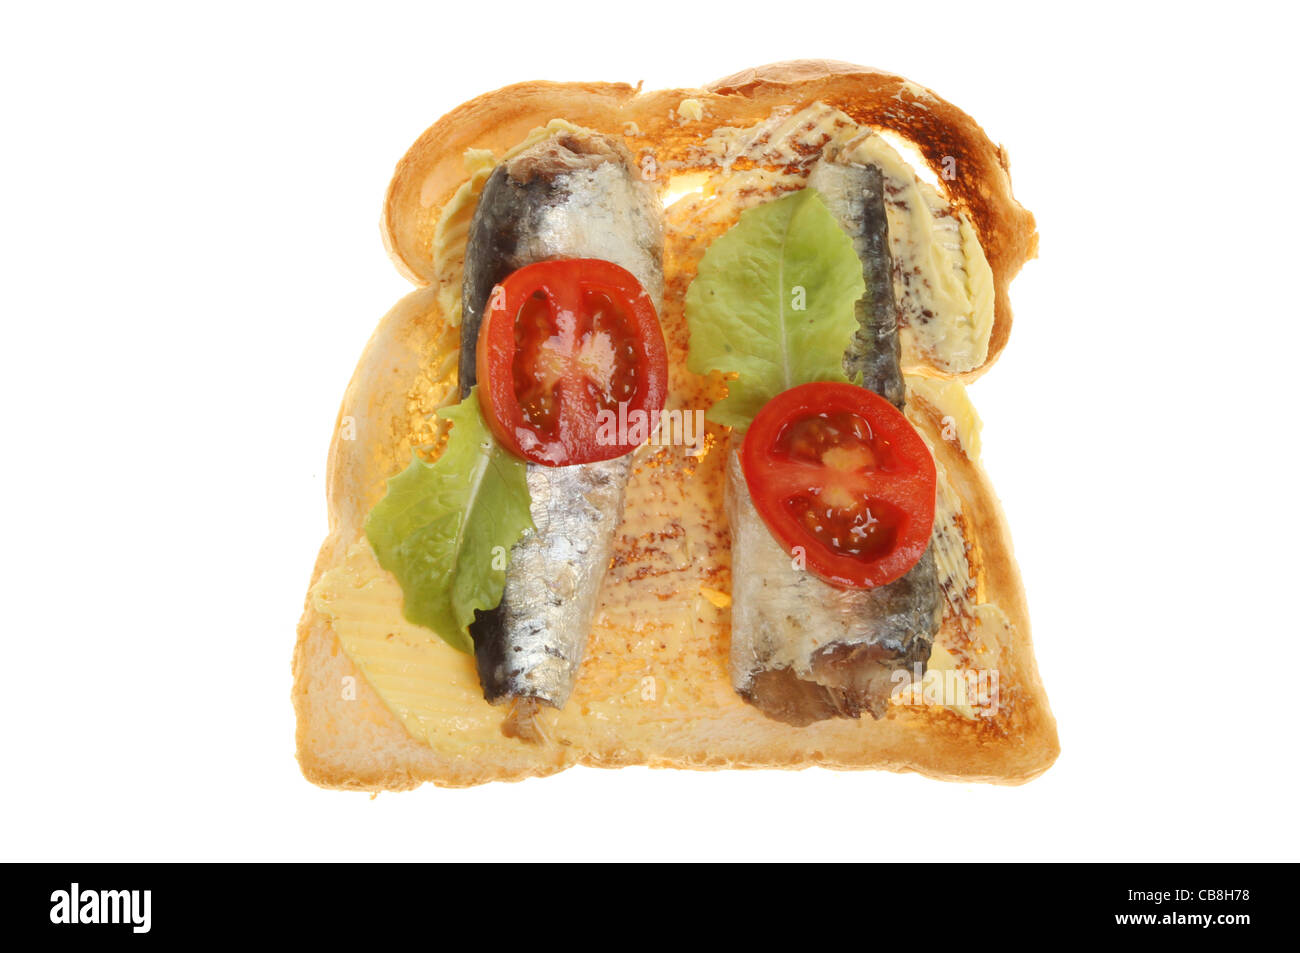 Les sardines avec une garniture de tomate et laitue sur beurrée isolés contre white Banque D'Images